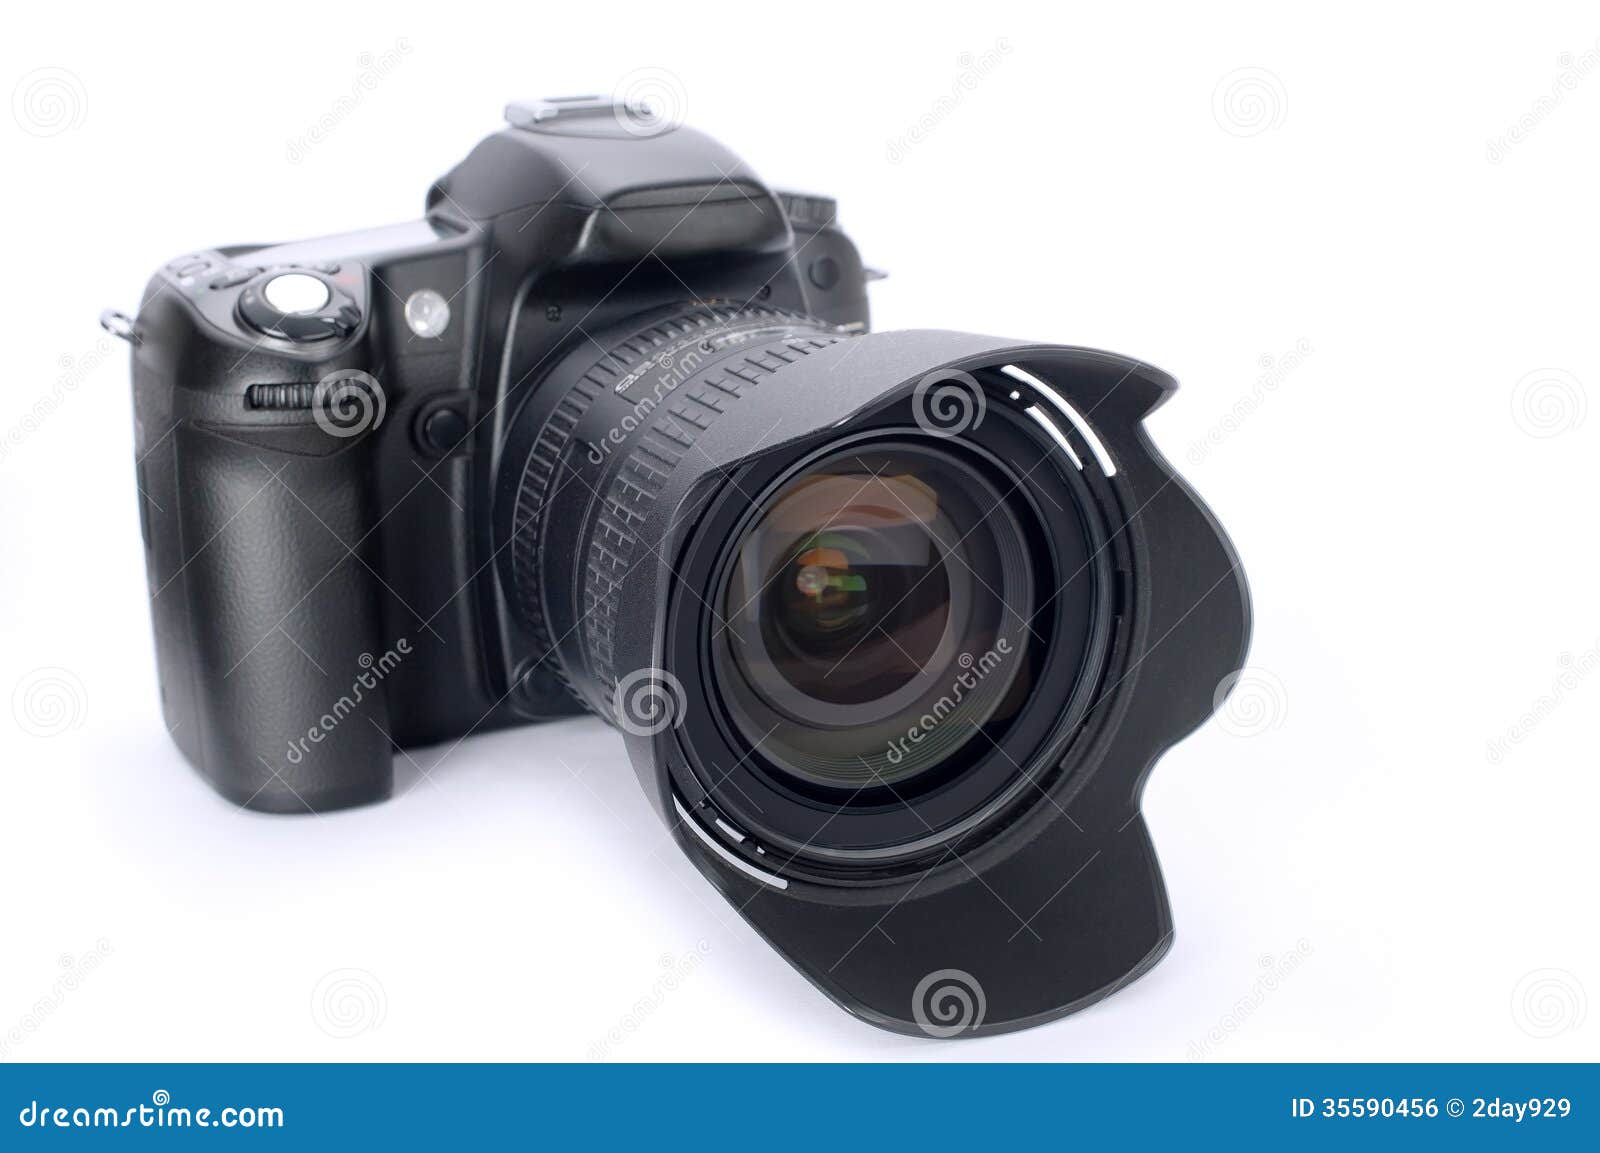 dslr camera, photography, object